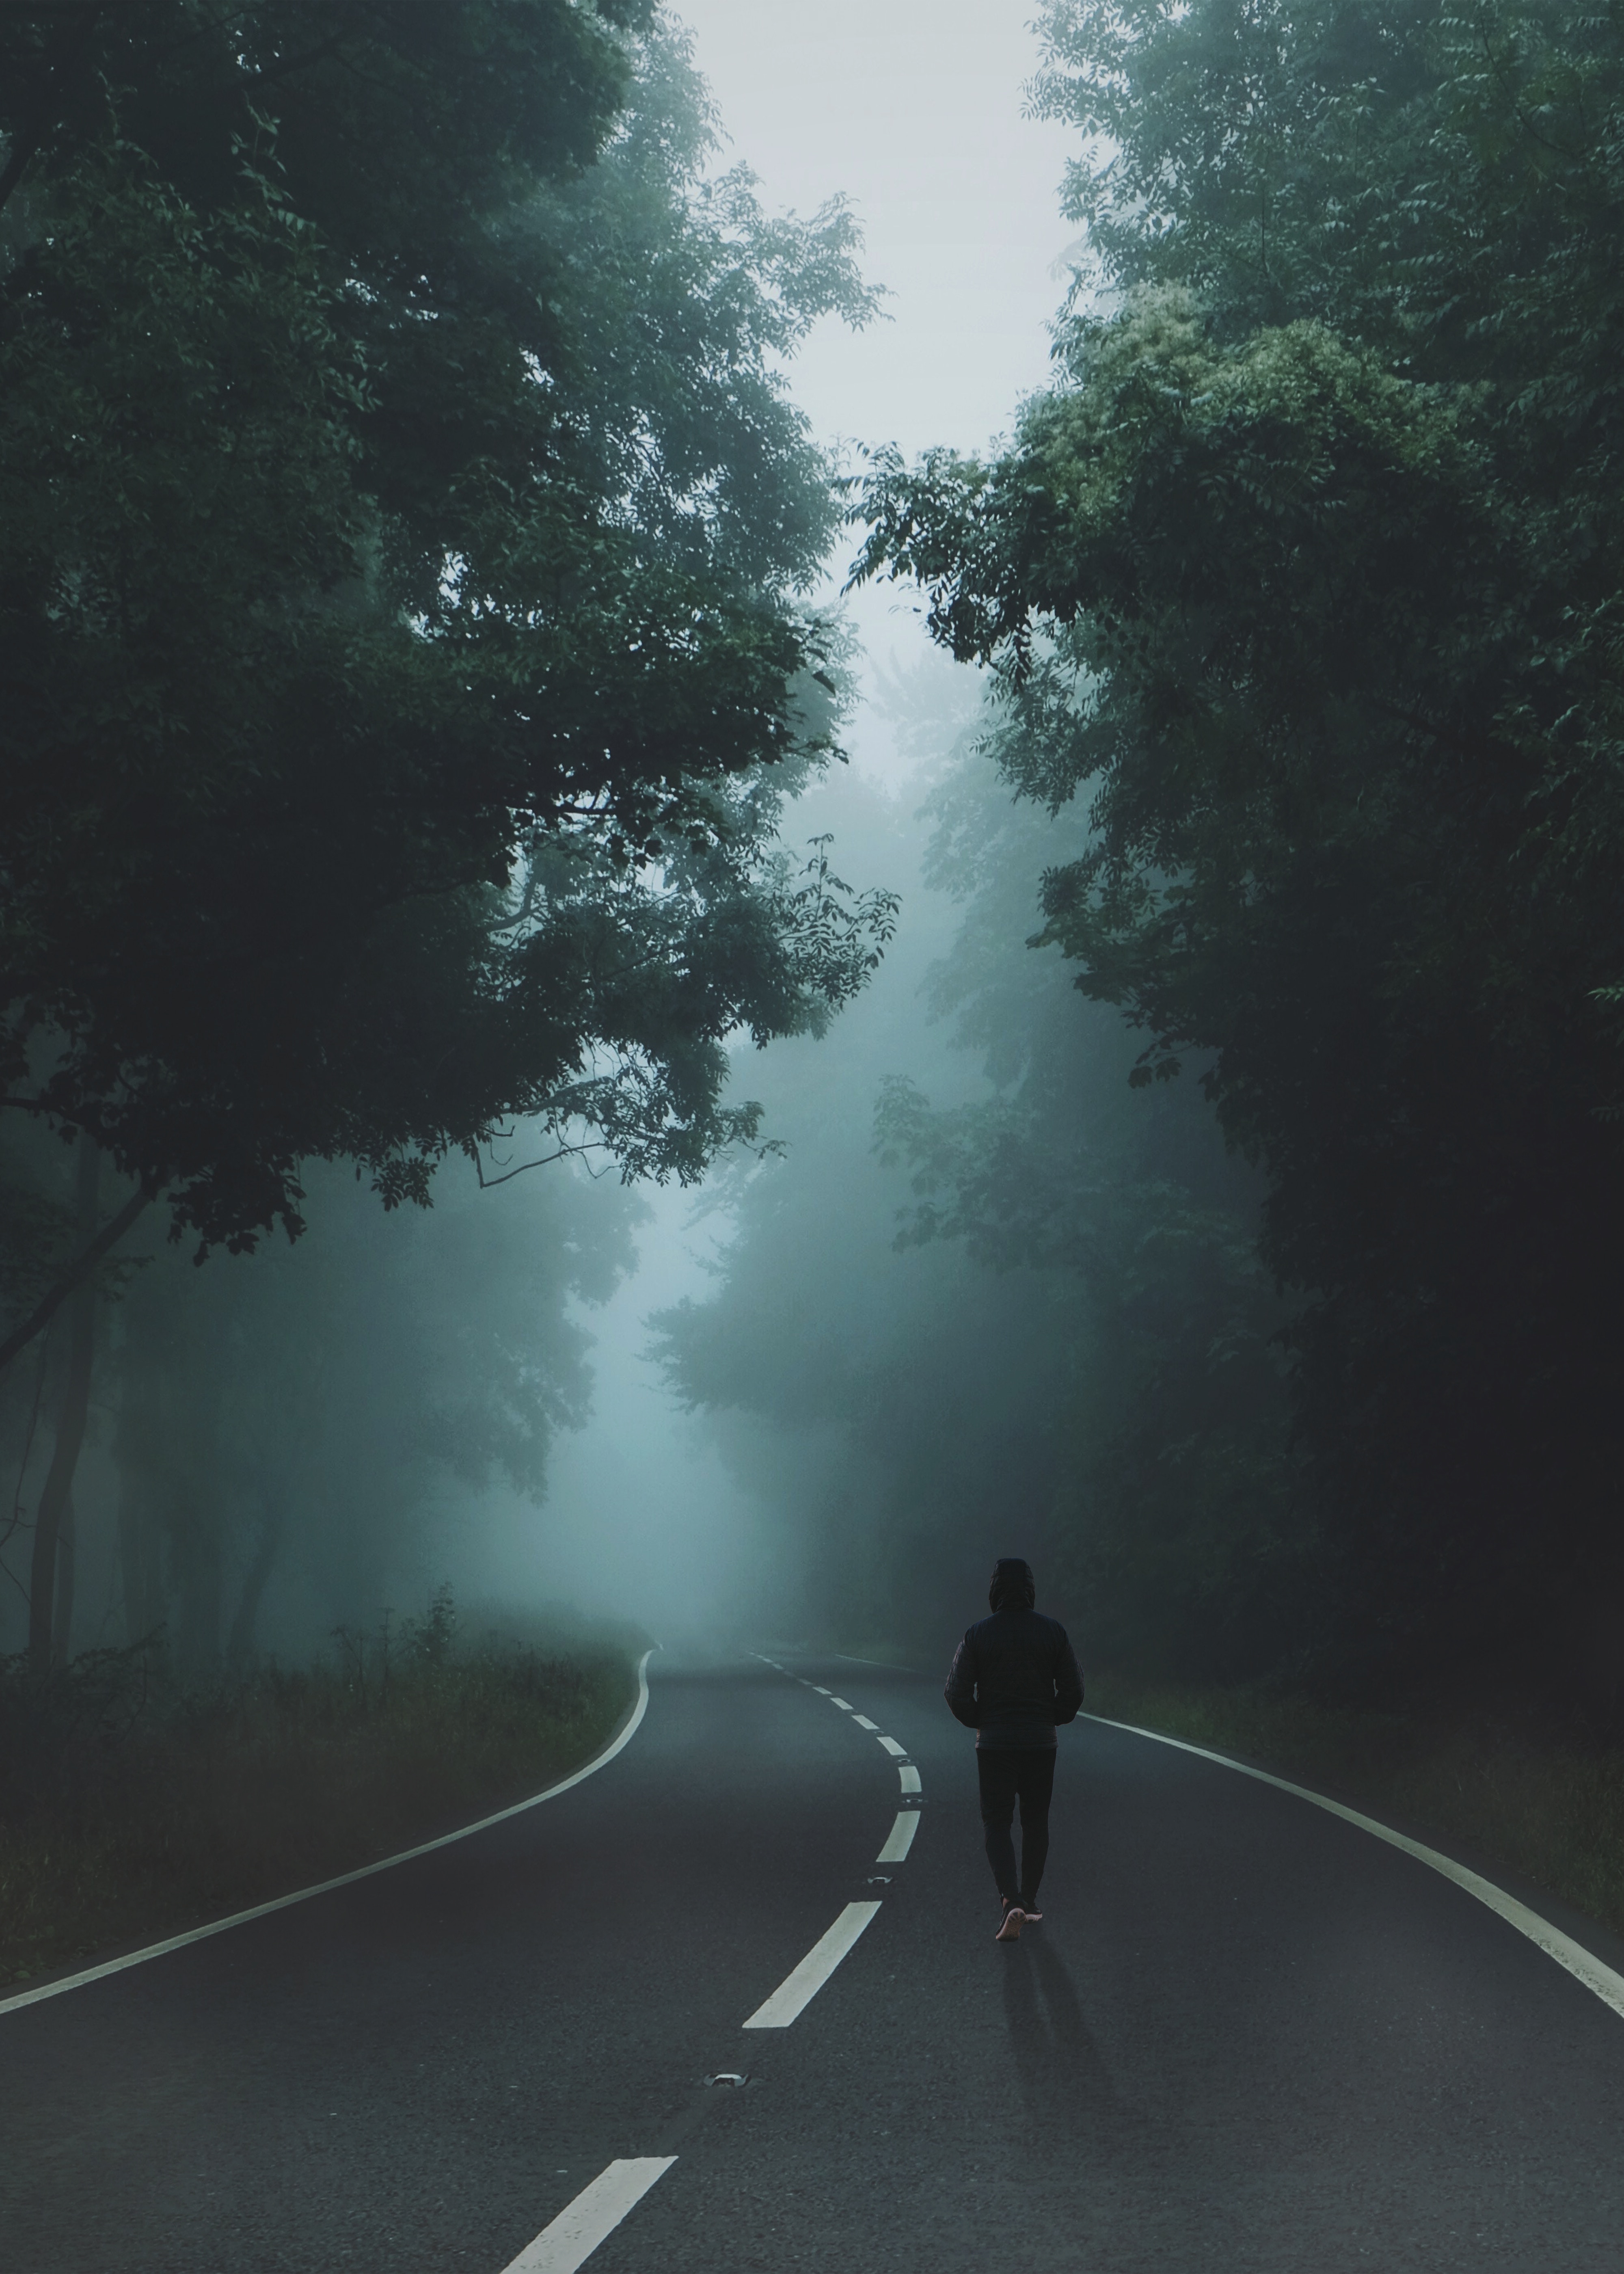 Walking Alone In The Road - HD Wallpaper 